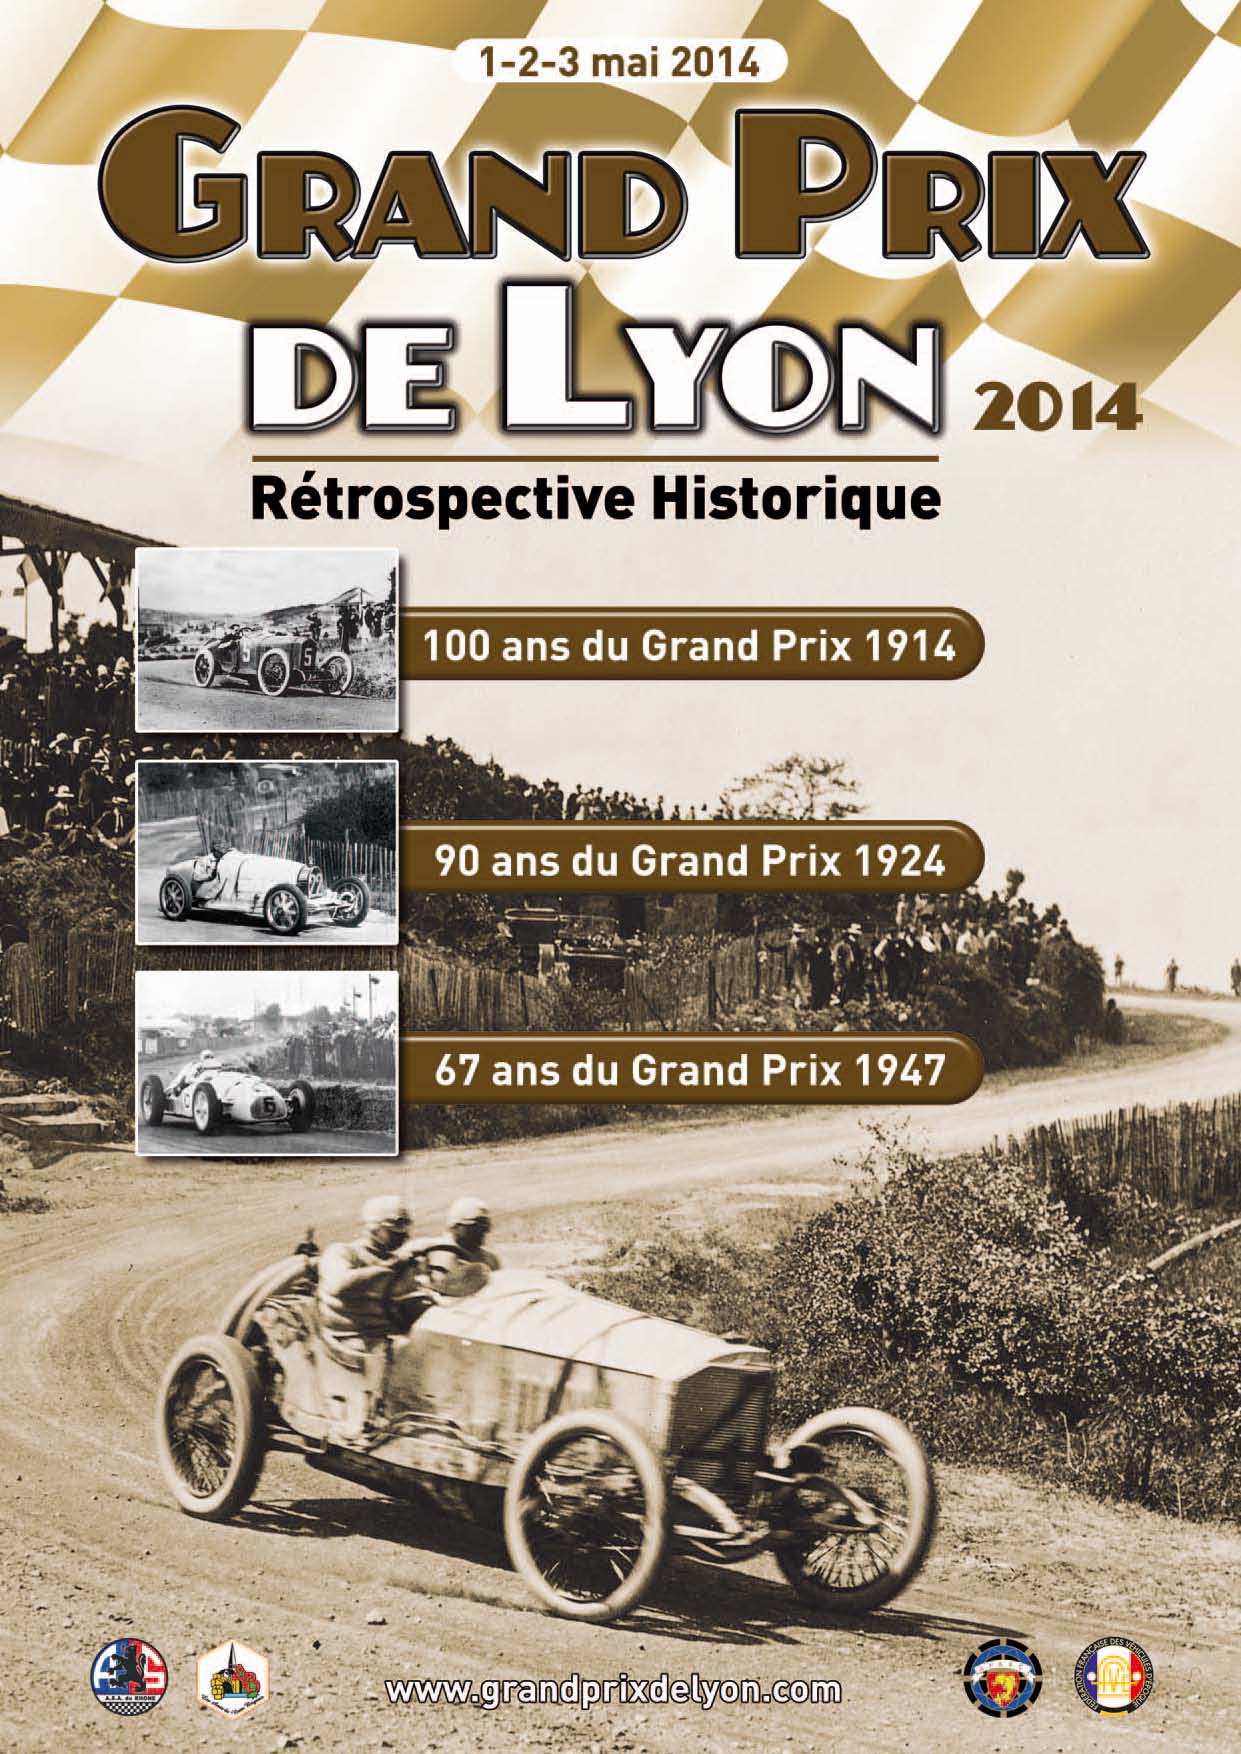 Grand Prix de Lyon 2014